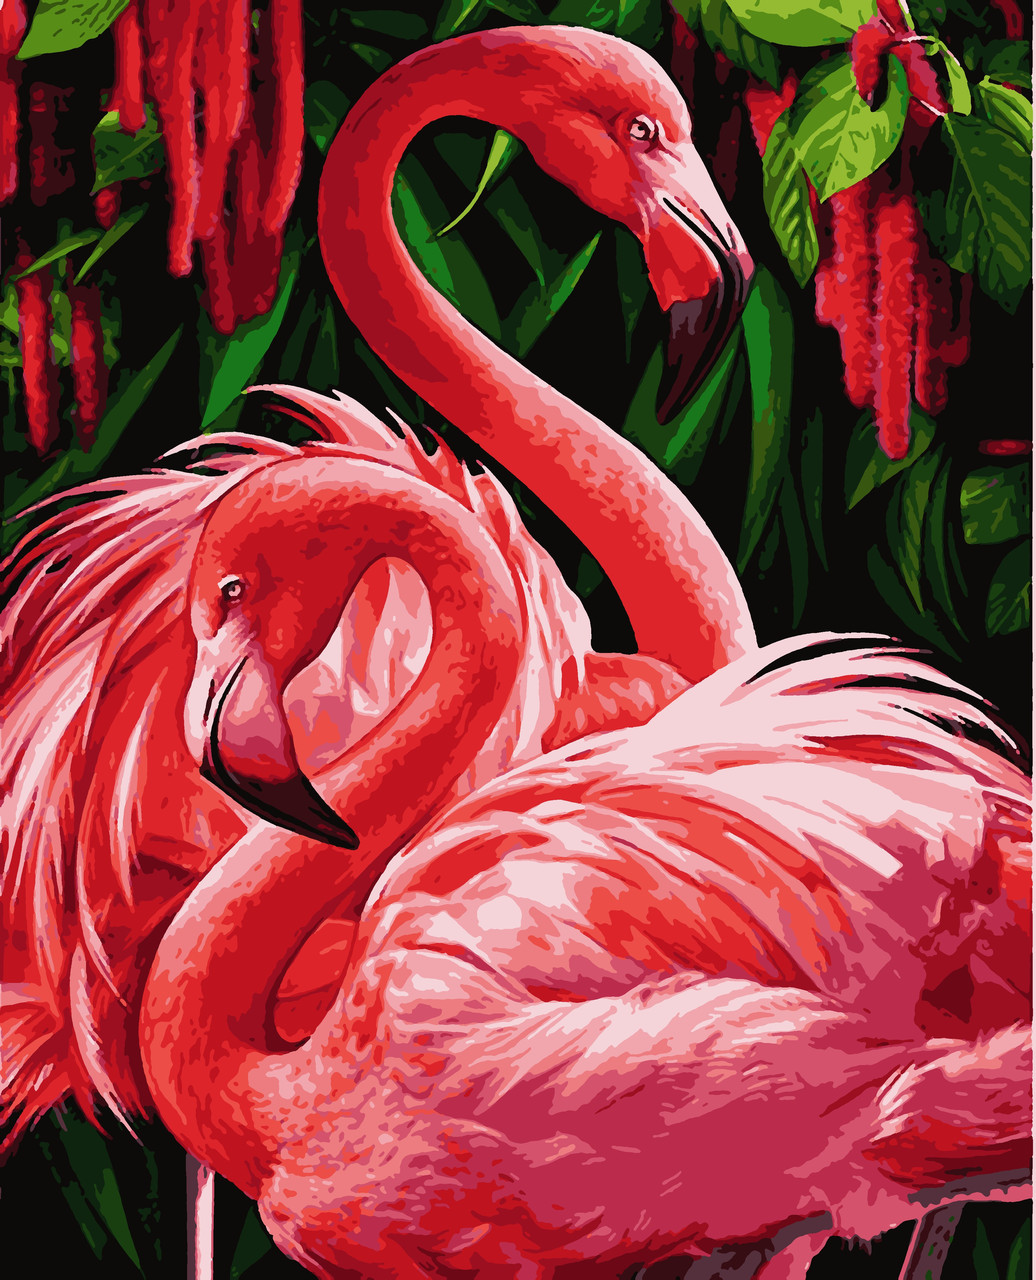 

Картины по номерам Artissimo Фламинго 40*50 см